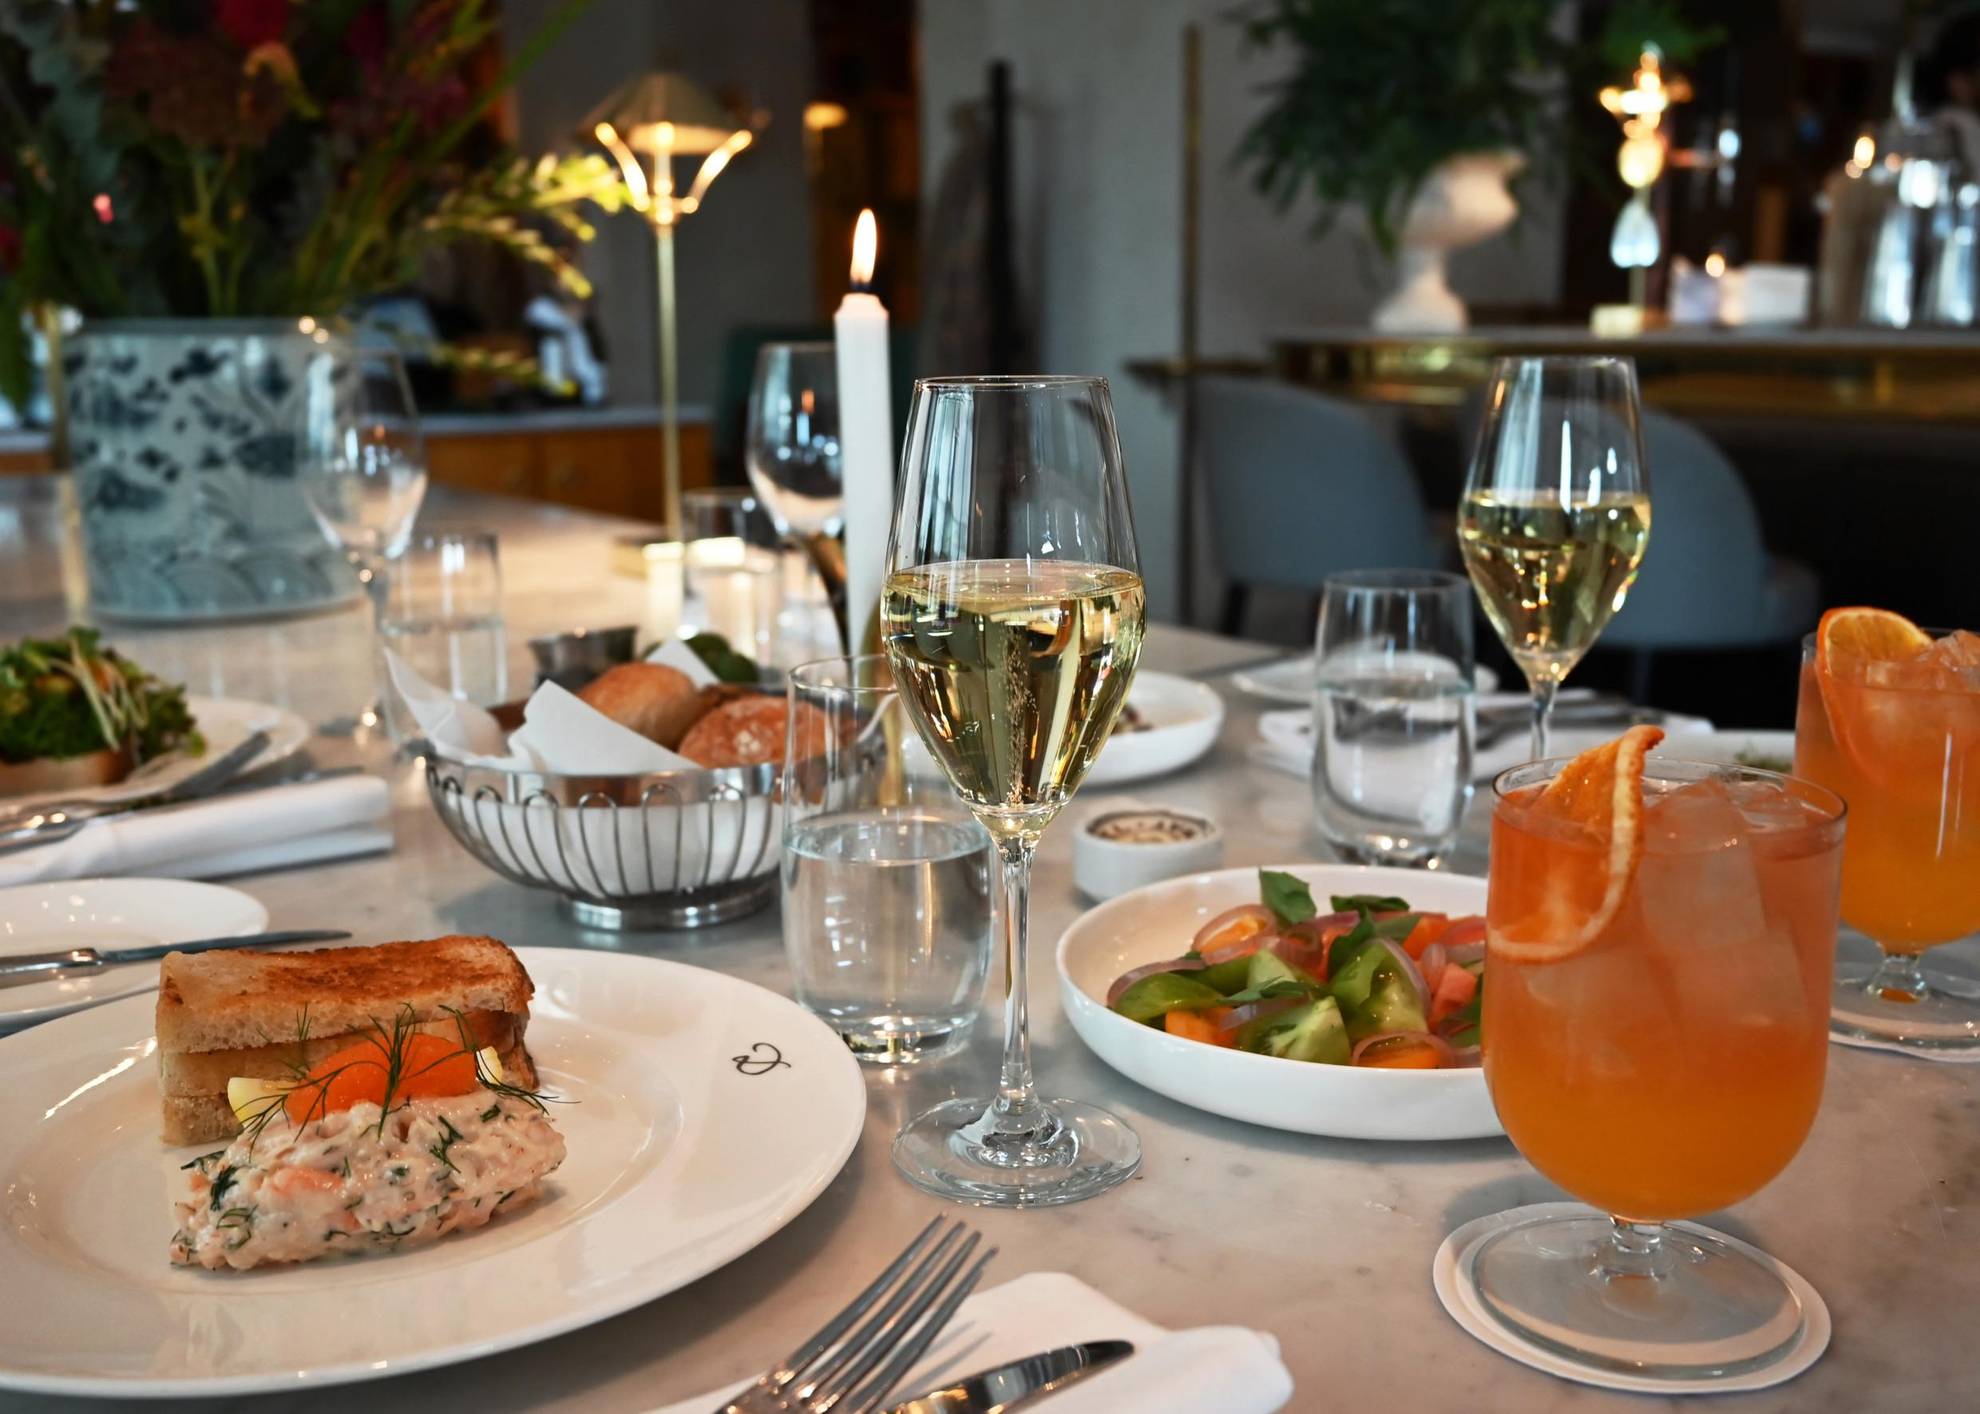 Une table est dressée avec des couverts, des assiettes remplies de nourriture, des verres d'eau et des verres à pied contenant du vin blanc.